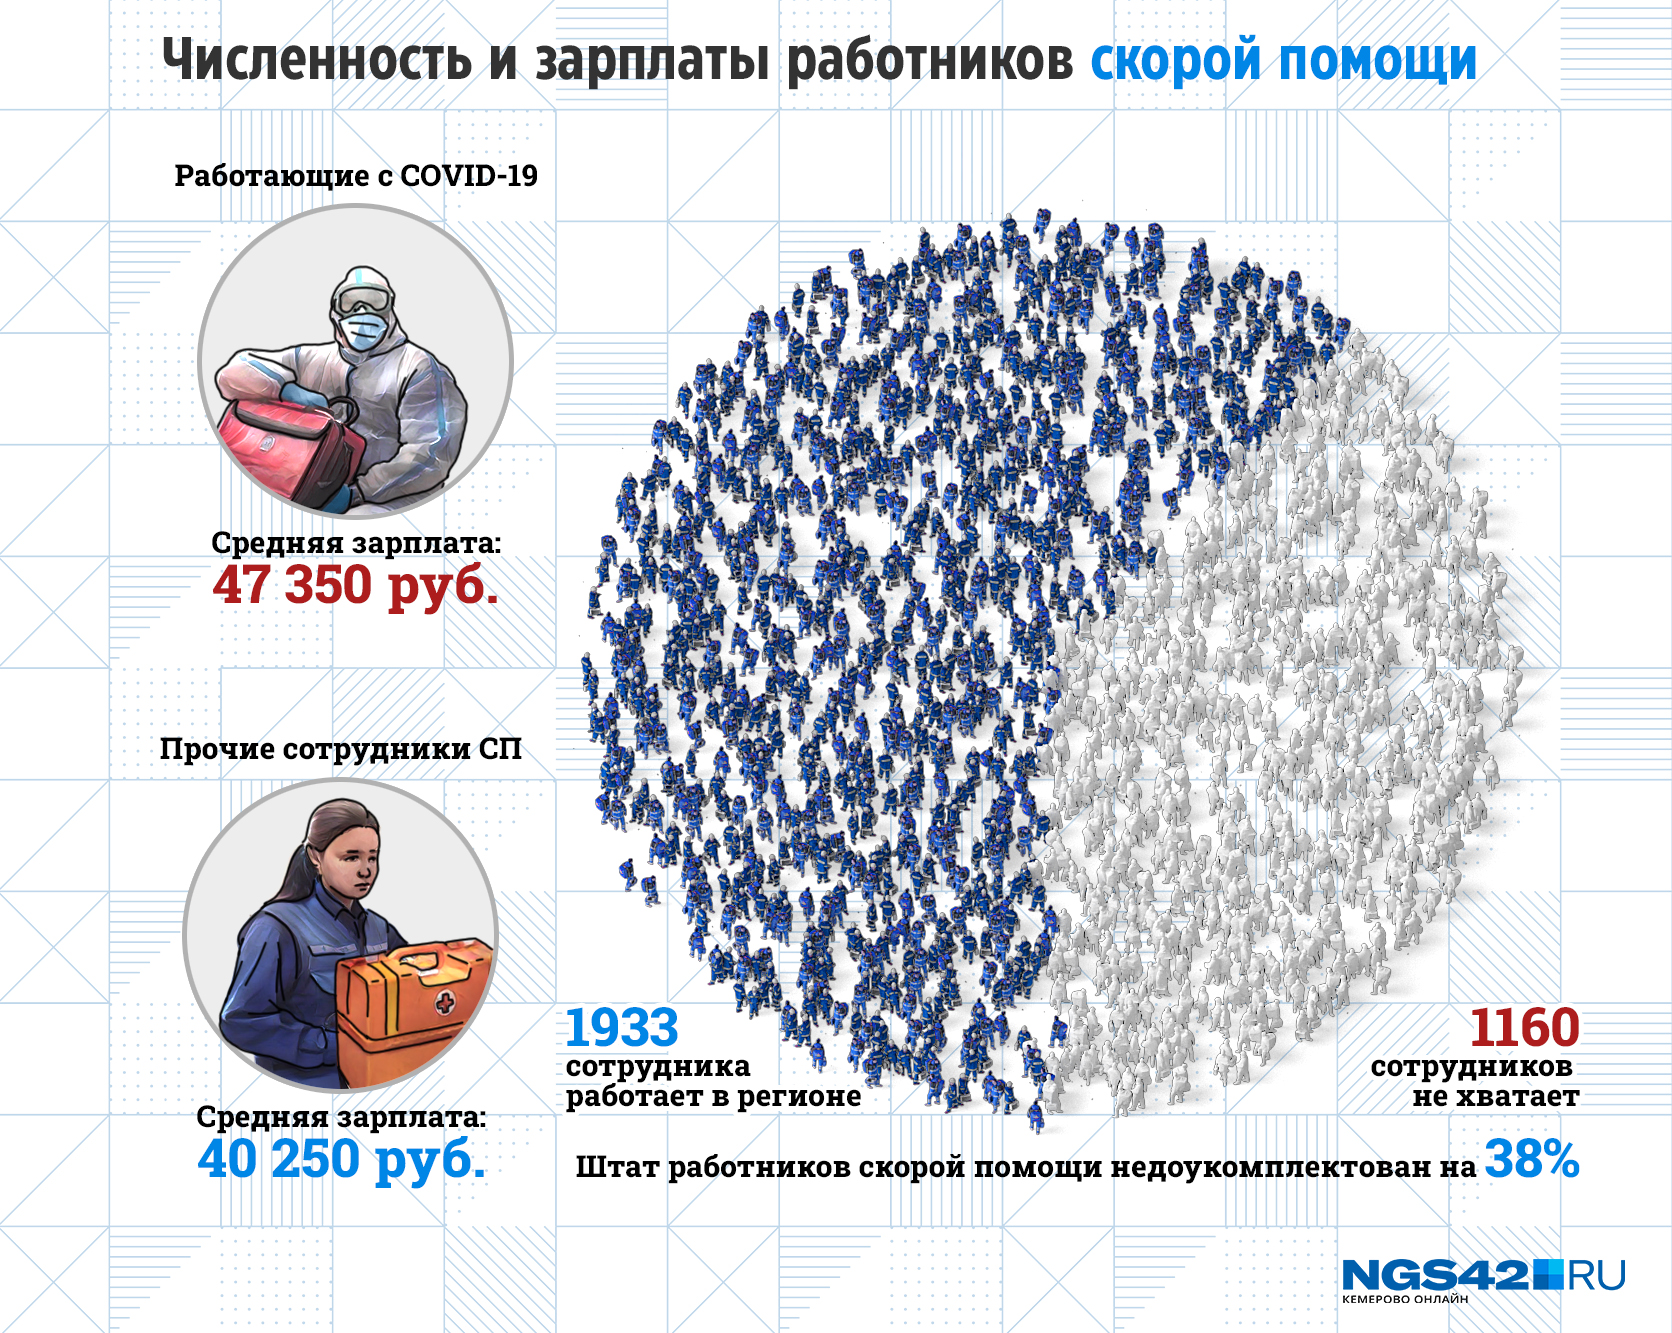 Численность и зарплаты работников в Кузбассе